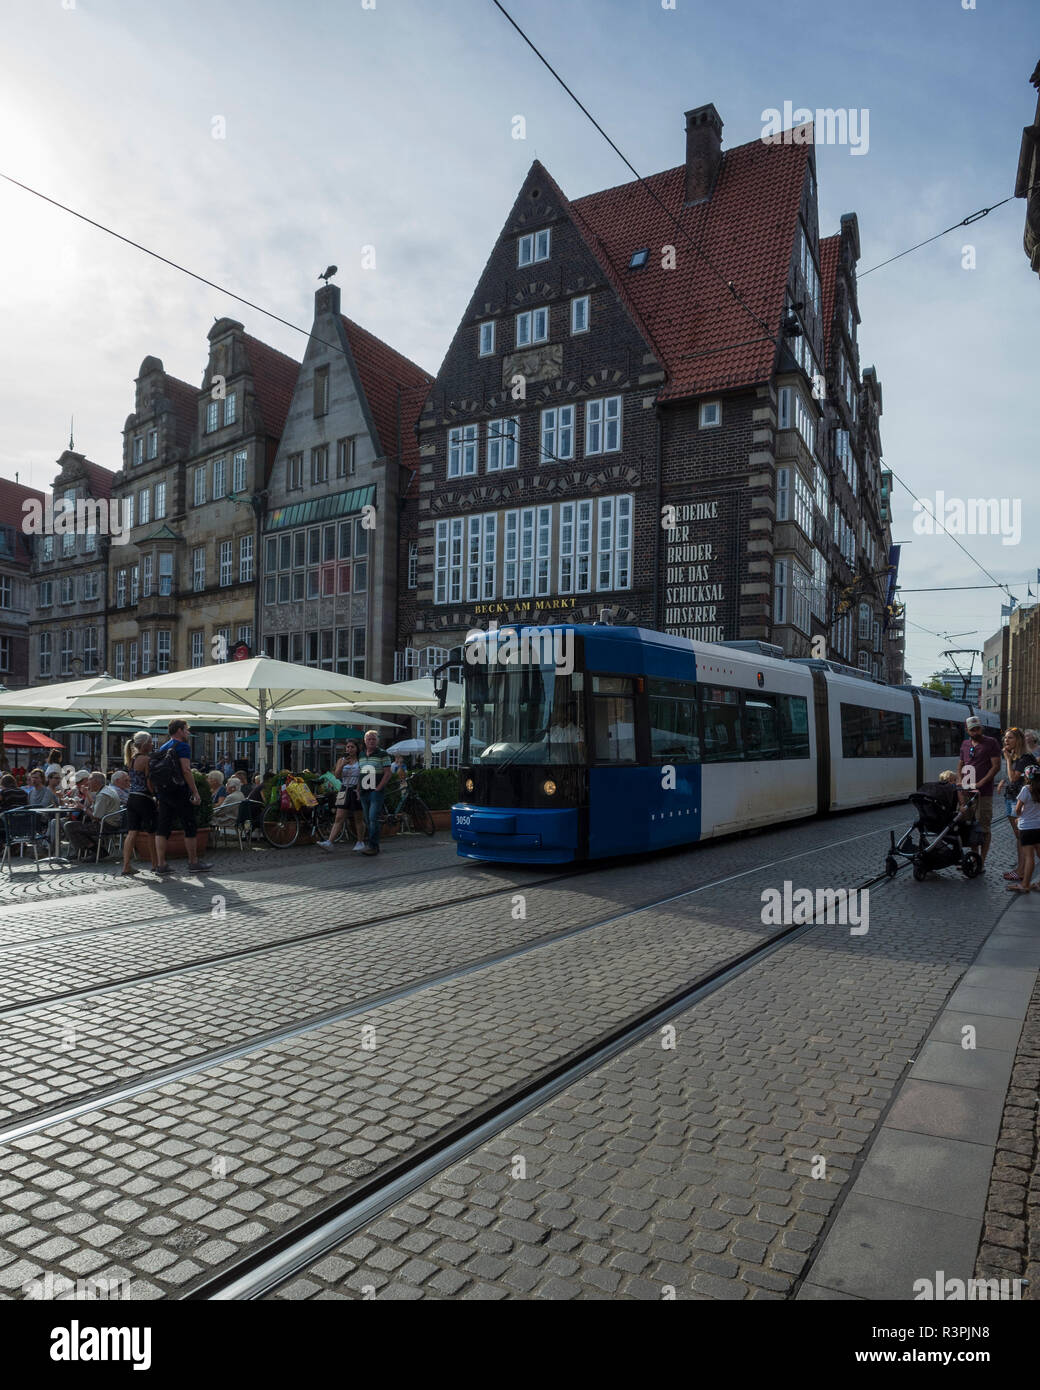 Marktplatz, Bremen. Deutschland. Germania. Una vista dal municipio di tutta la piazza del mercato. Il tram passa attraverso la piazza del mercato. Foto Stock